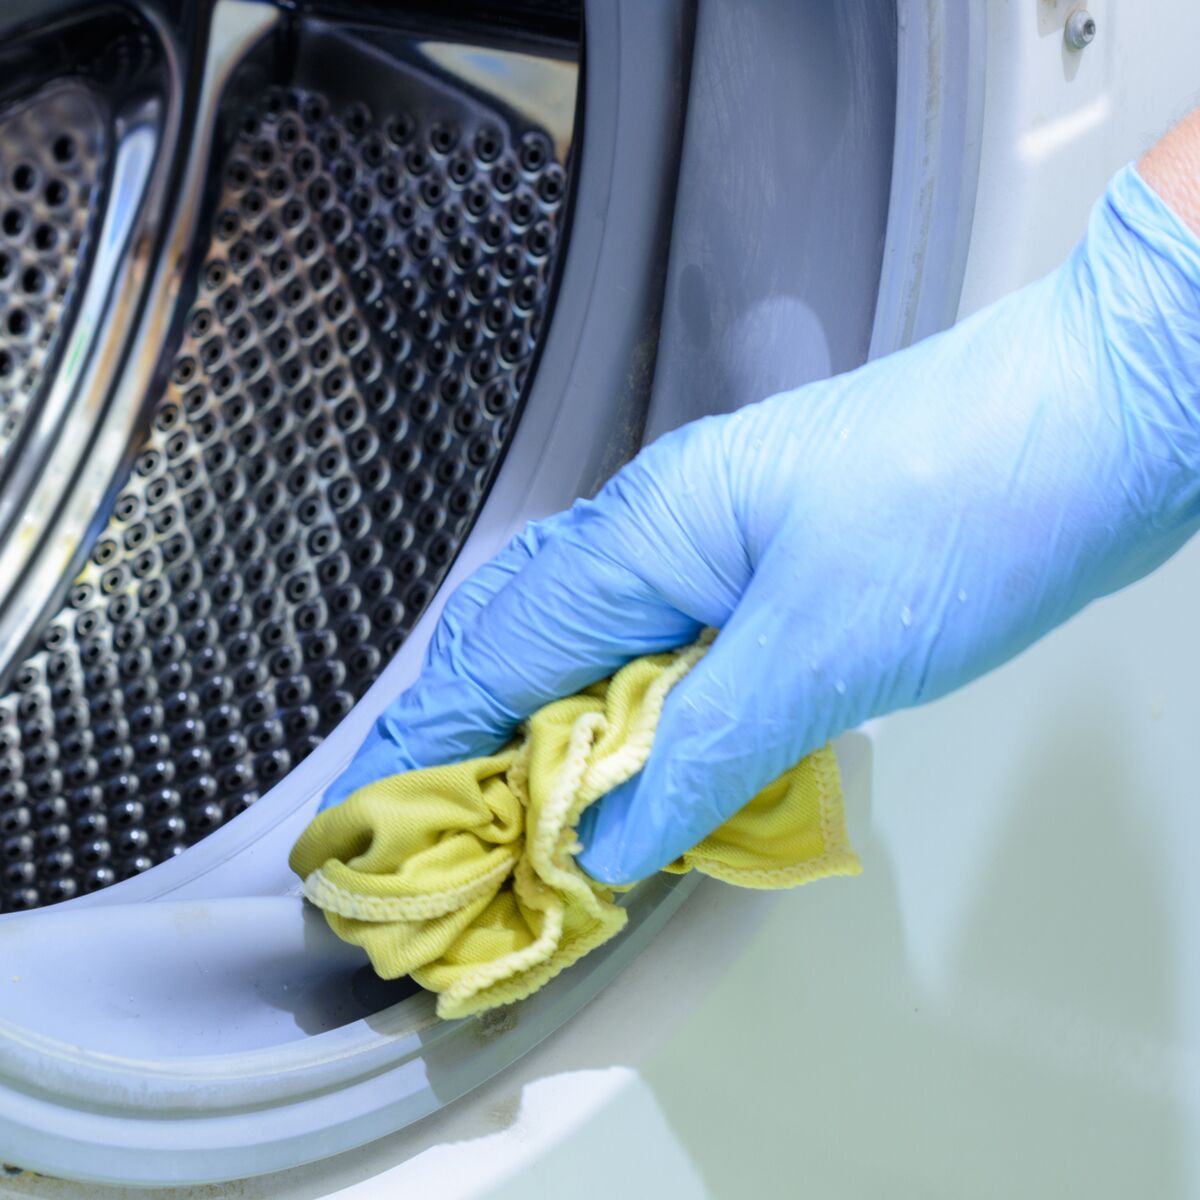 Comment nettoyer le tambour et le joint de porte de ma machine à laver ?